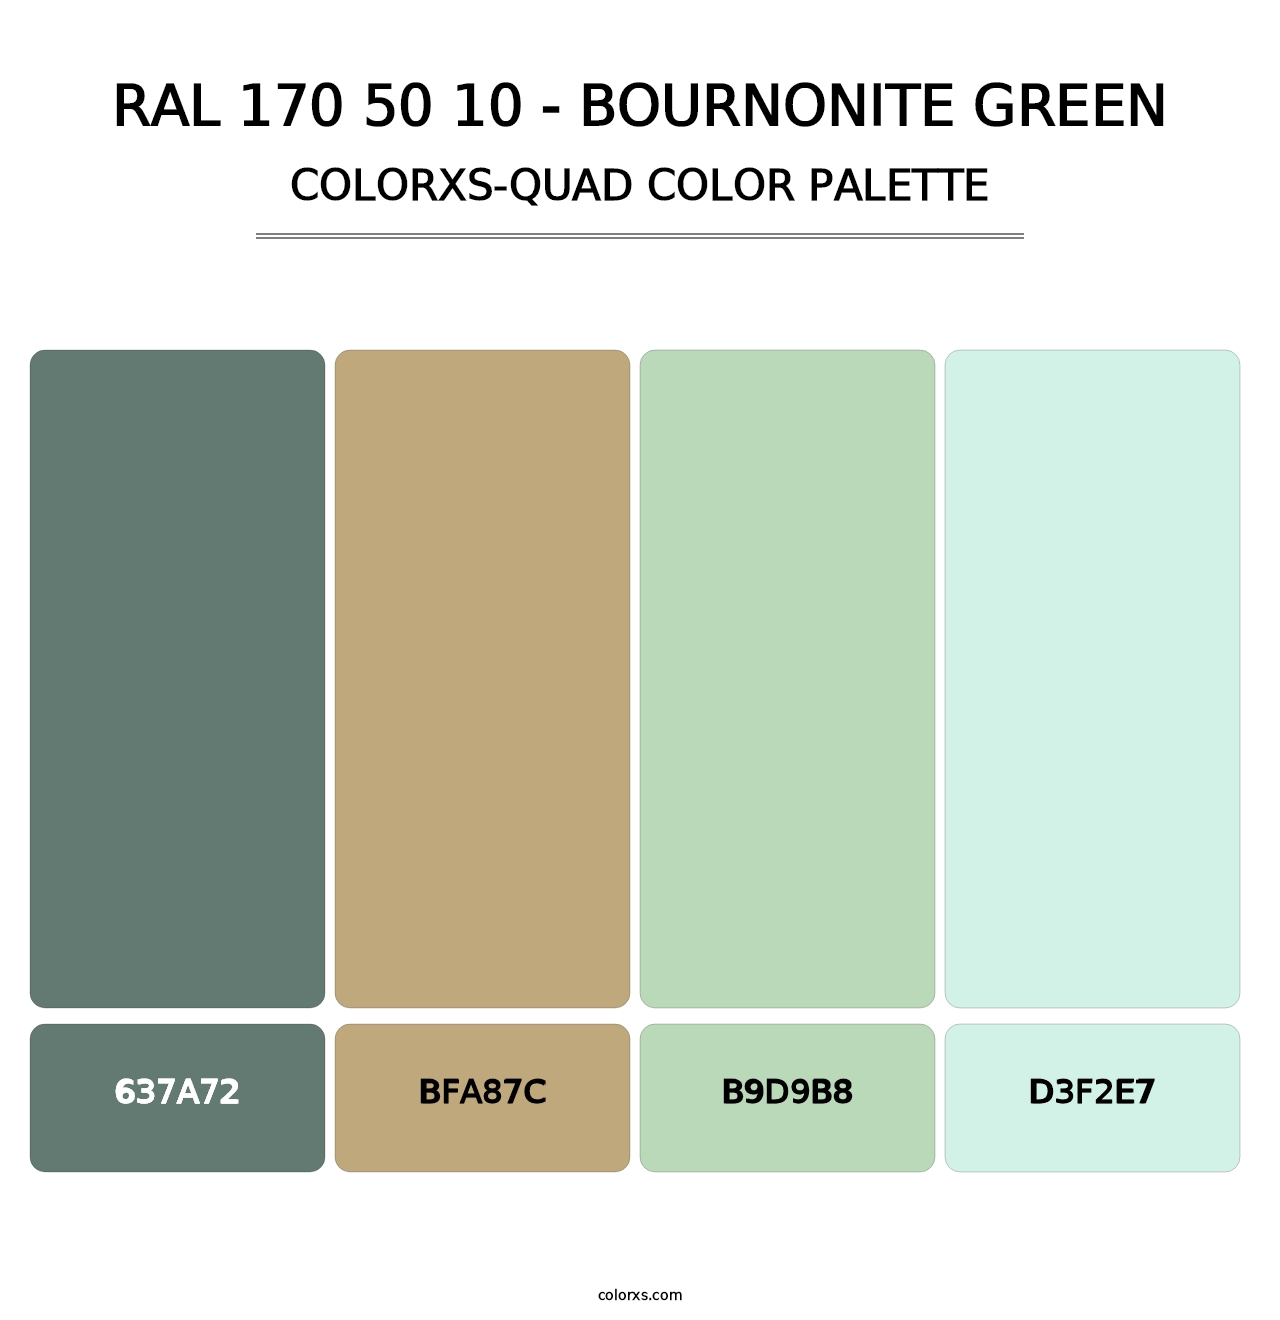 RAL 170 50 10 - Bournonite Green - Colorxs Quad Palette